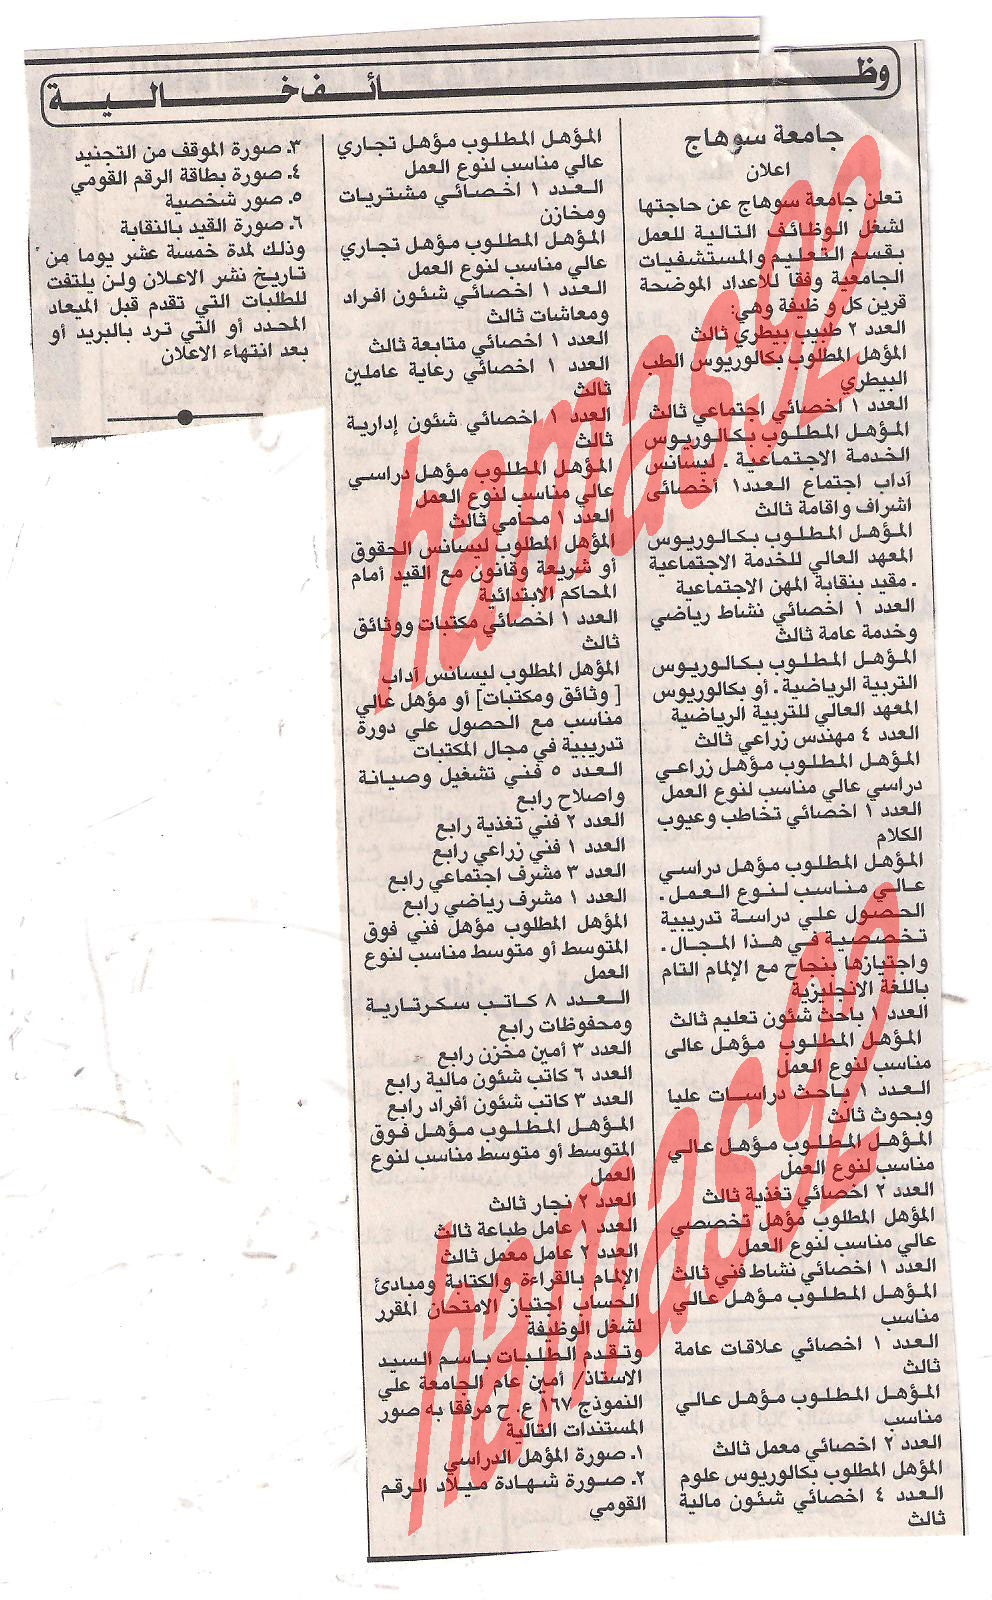 وظائف جريدة الاهرام الجمعة 9\12\2011 , الجزء الثالث  Picture+015